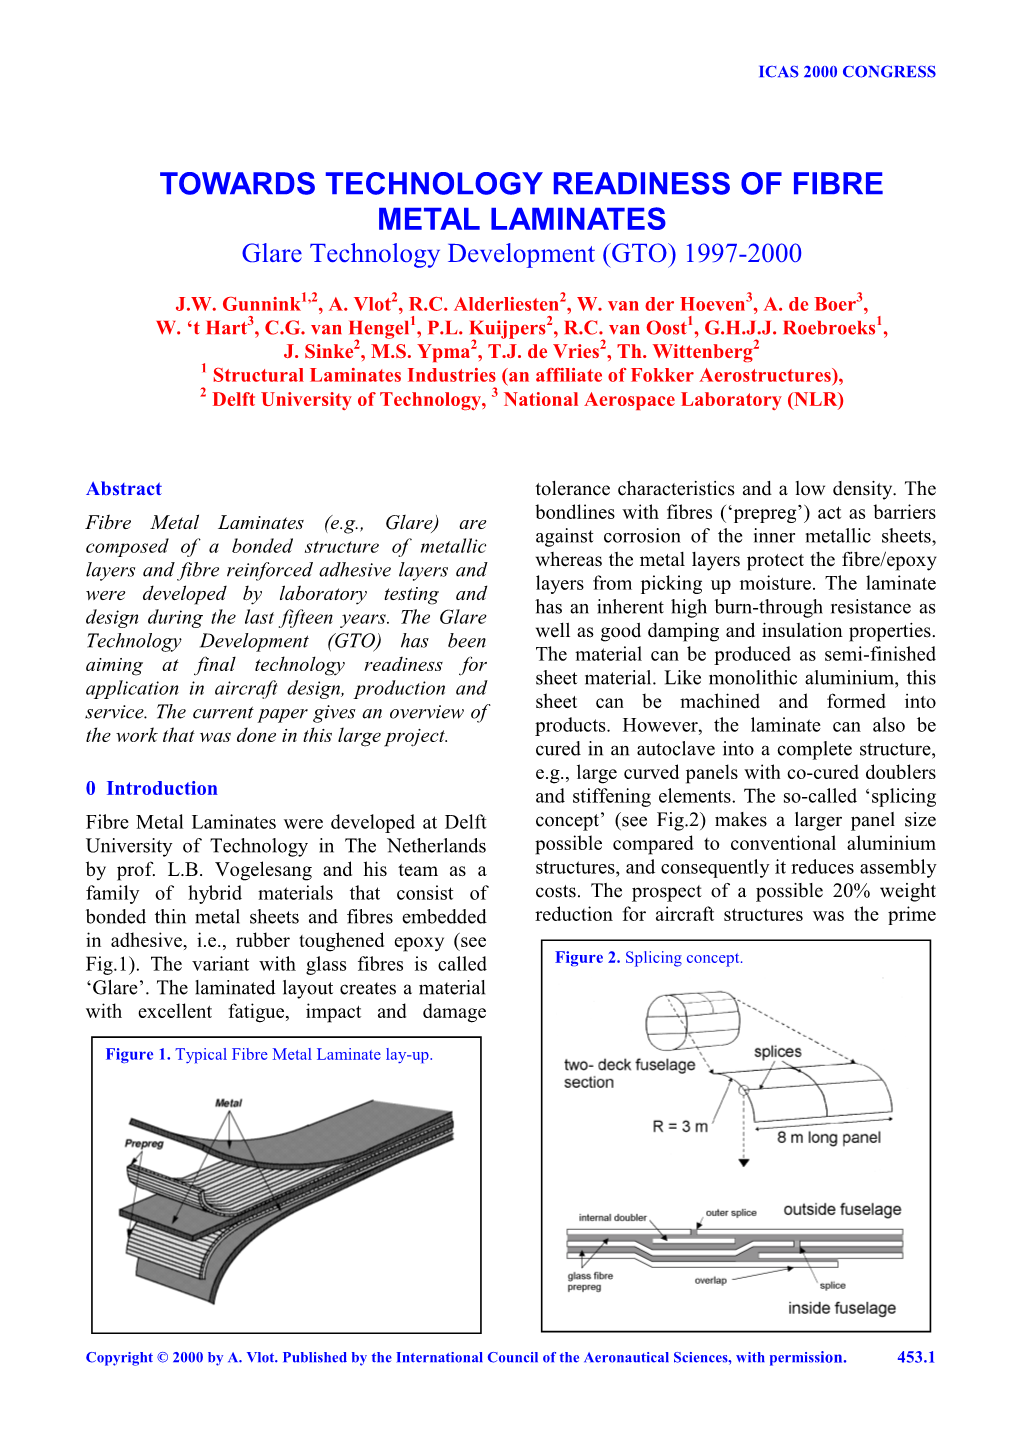 TOWARDS TECHNOLOGY READINESS of FIBRE METAL LAMINATES Glare Technology Development (GTO) 1997-2000